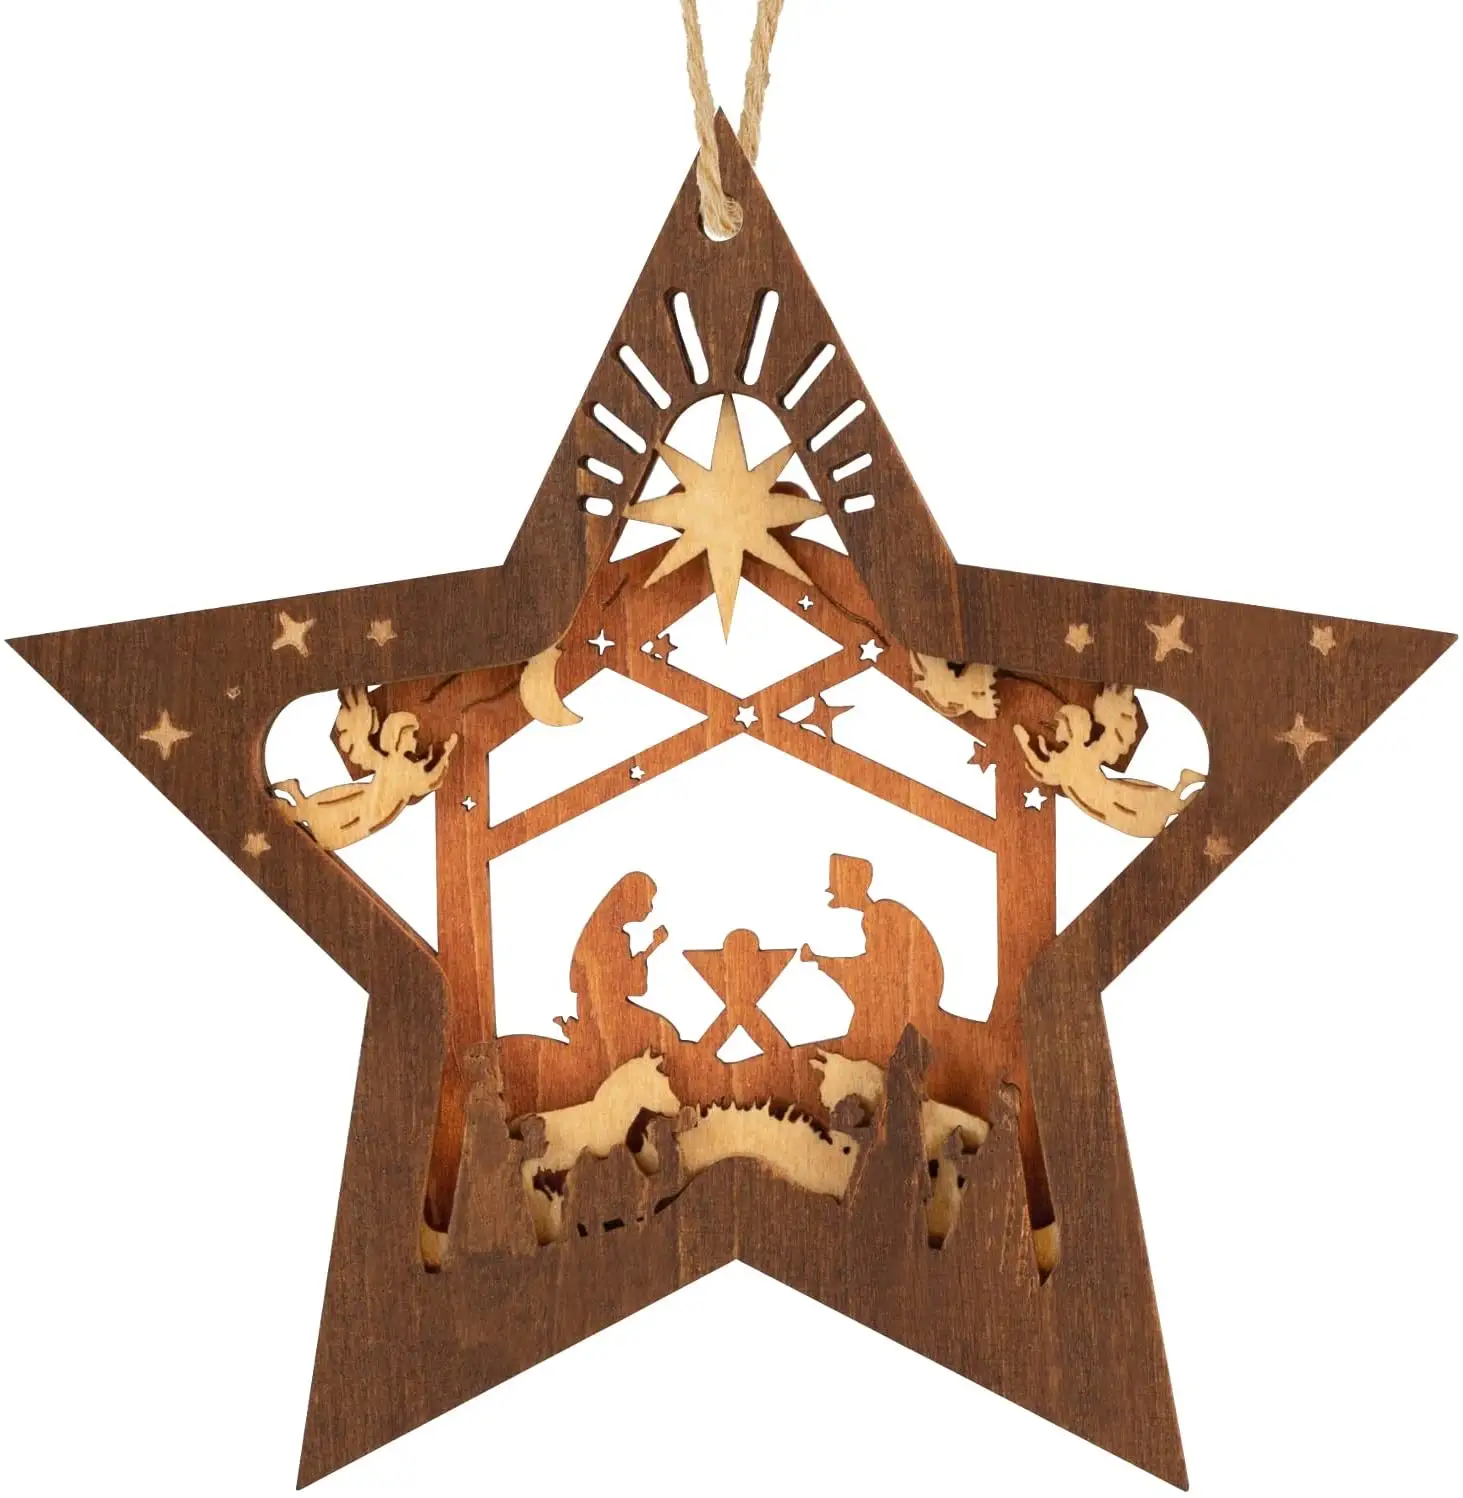 Nativity Scene Ornaments Christmas Wooden Hanging Ornament Star Shaped Nativity Scene Keepsake for Xmas Tree